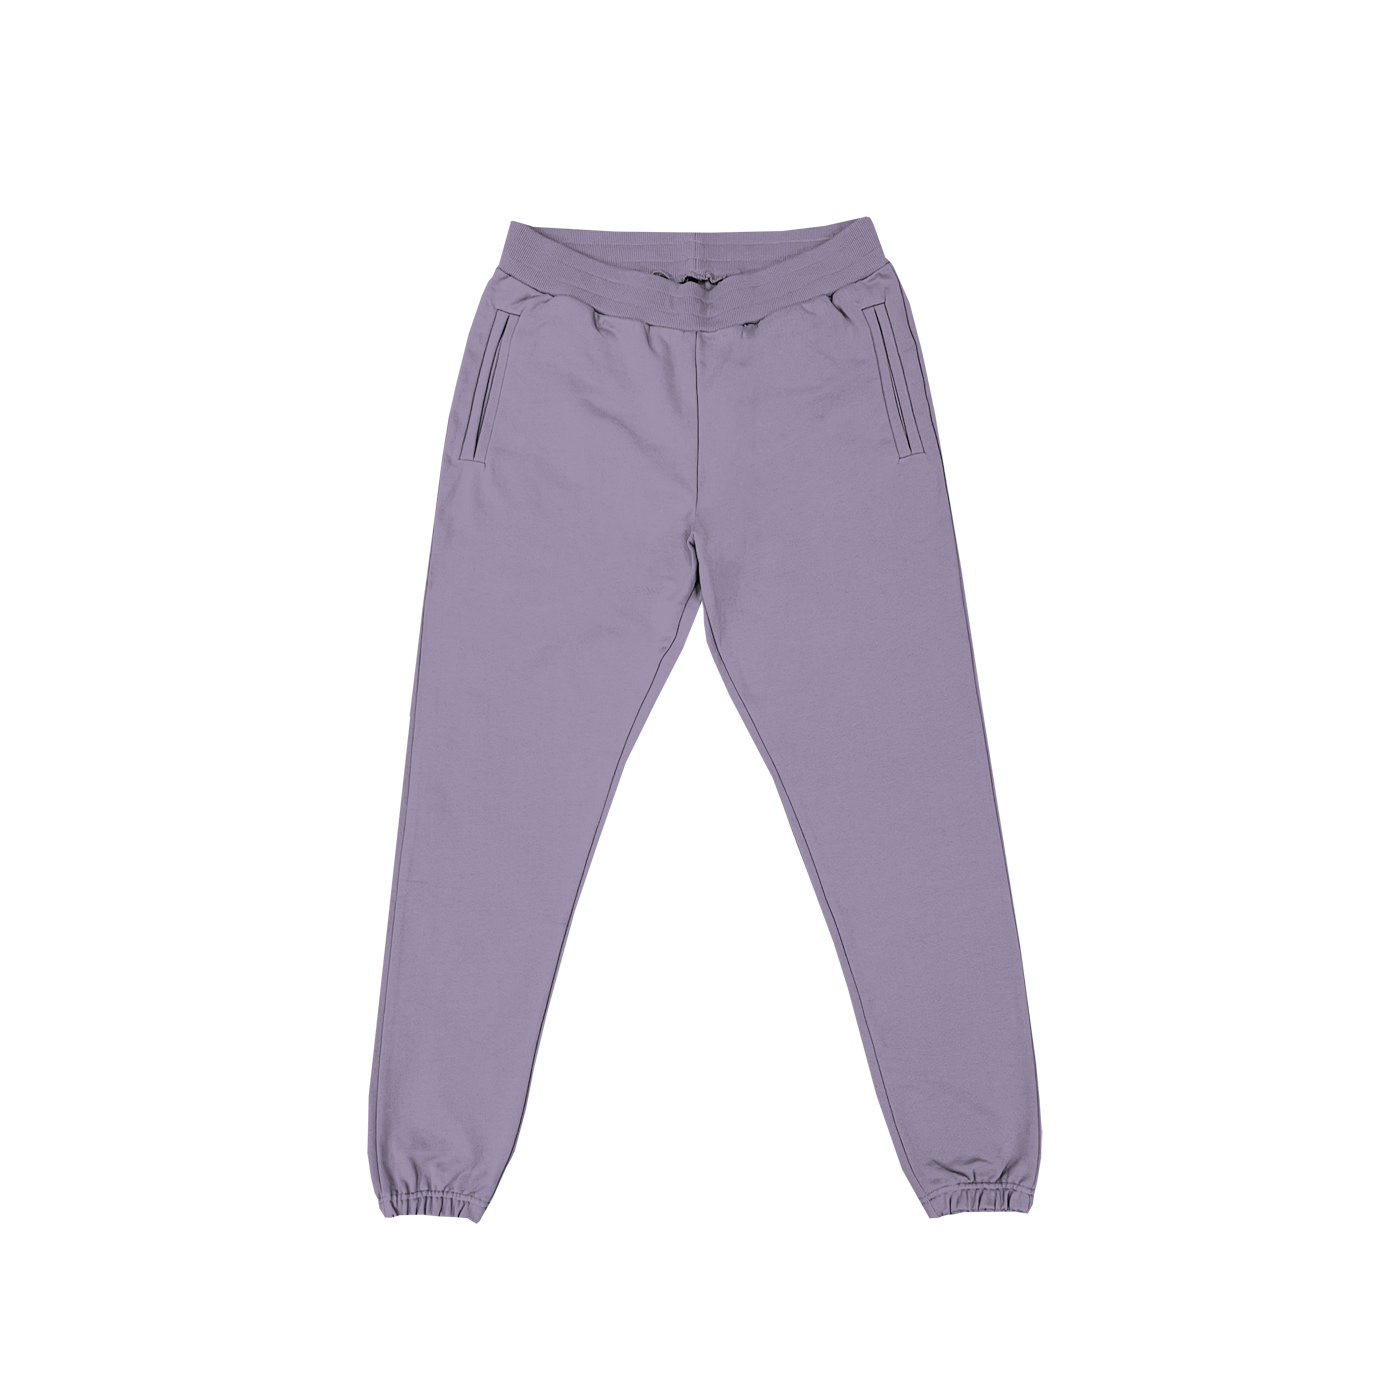 "Pantalon de survêtement couleur lavande avec poches avant, idéal pour un style décontracté et personnalisable sur prynt.shop."